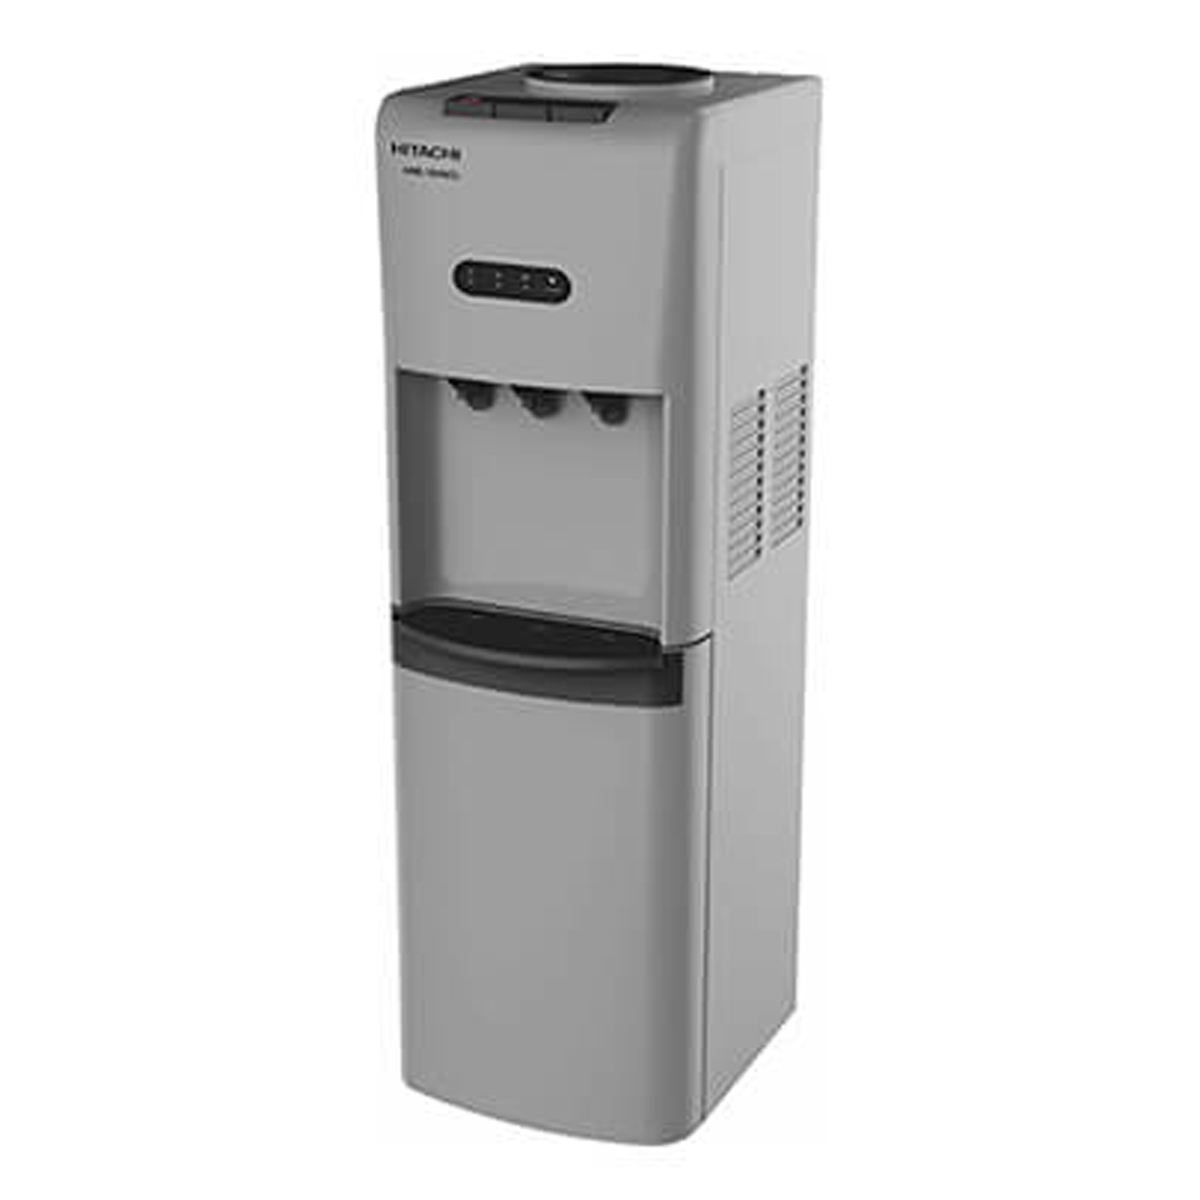 Hitachi Water Dispenser HWD15000 3Tap